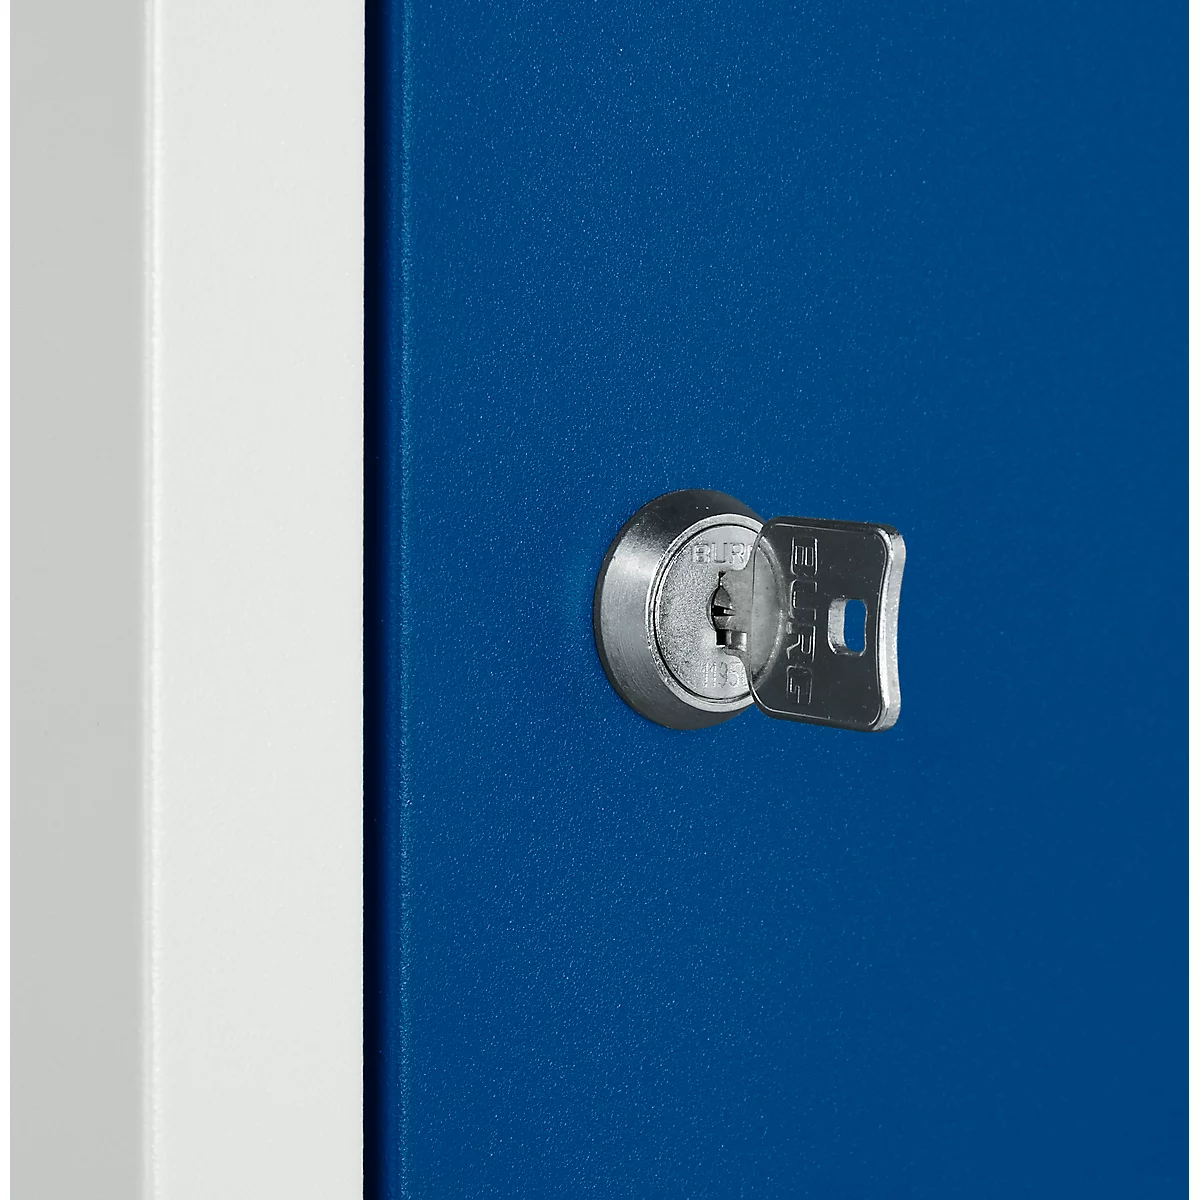 Schäfer Shop Select Locker columna S5, con cerradura de cilindro, gris claro/azul genciana